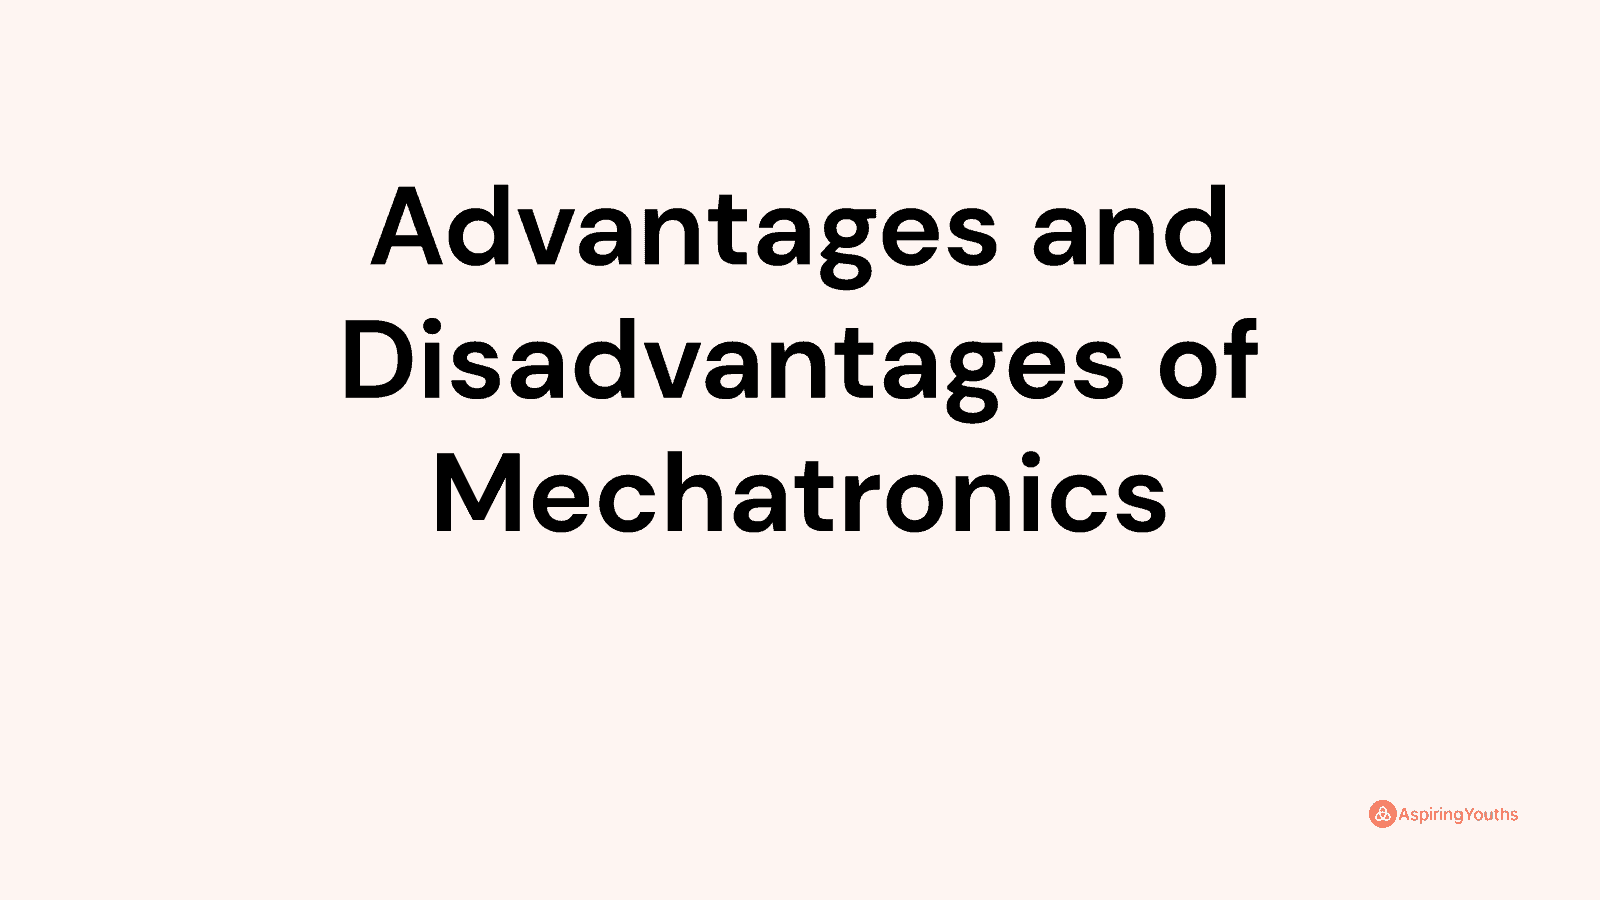 Advantages and disadvantages of Mechatronics